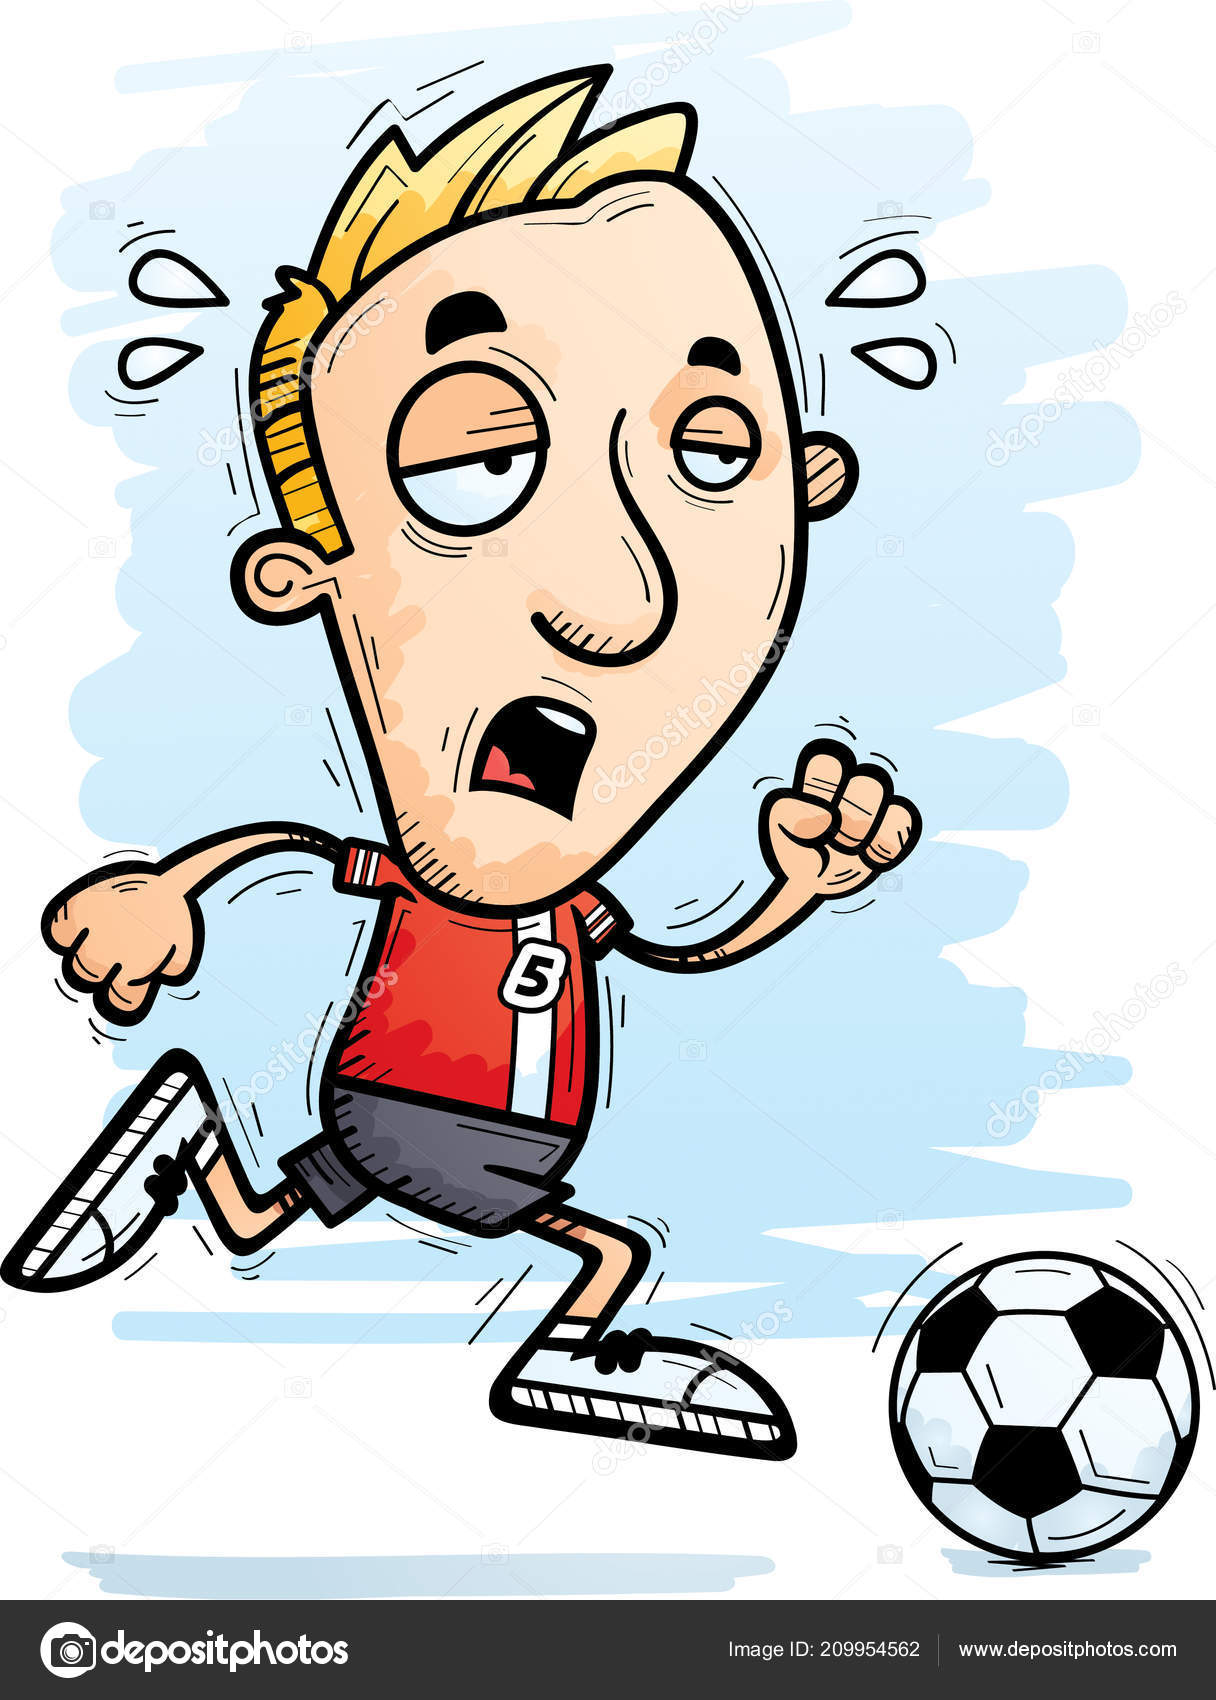 Desenho de desenho animado de um jogador de futebol